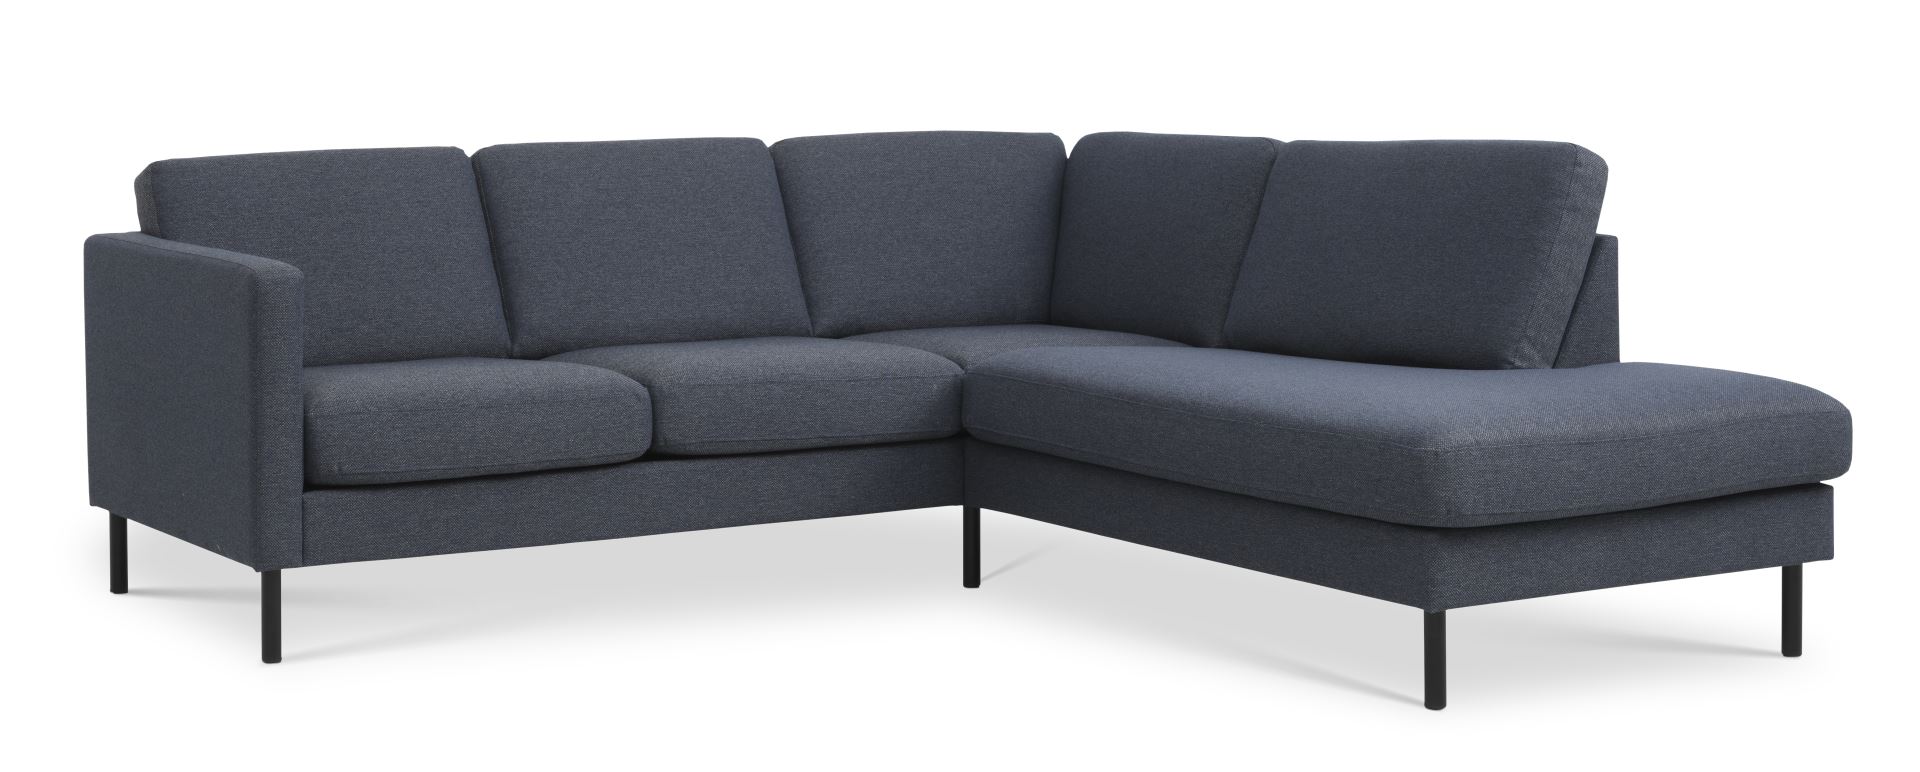 Ask sæt 53 lille OE sofa, m. højre chaiselong - navy blå polyester stof og sort metal